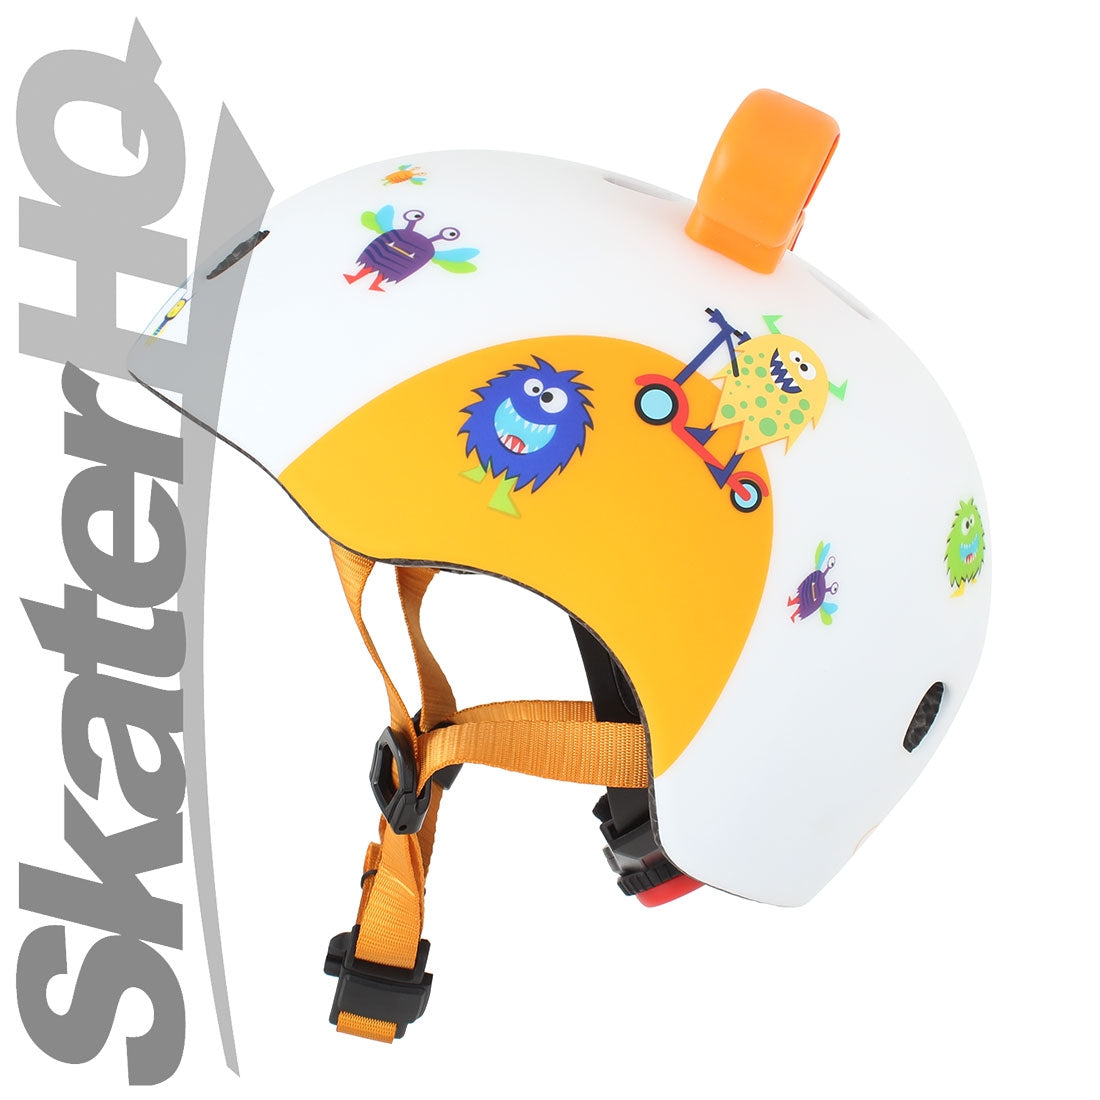 Micro 3D Monster LED Helmet - XSmall Helmets